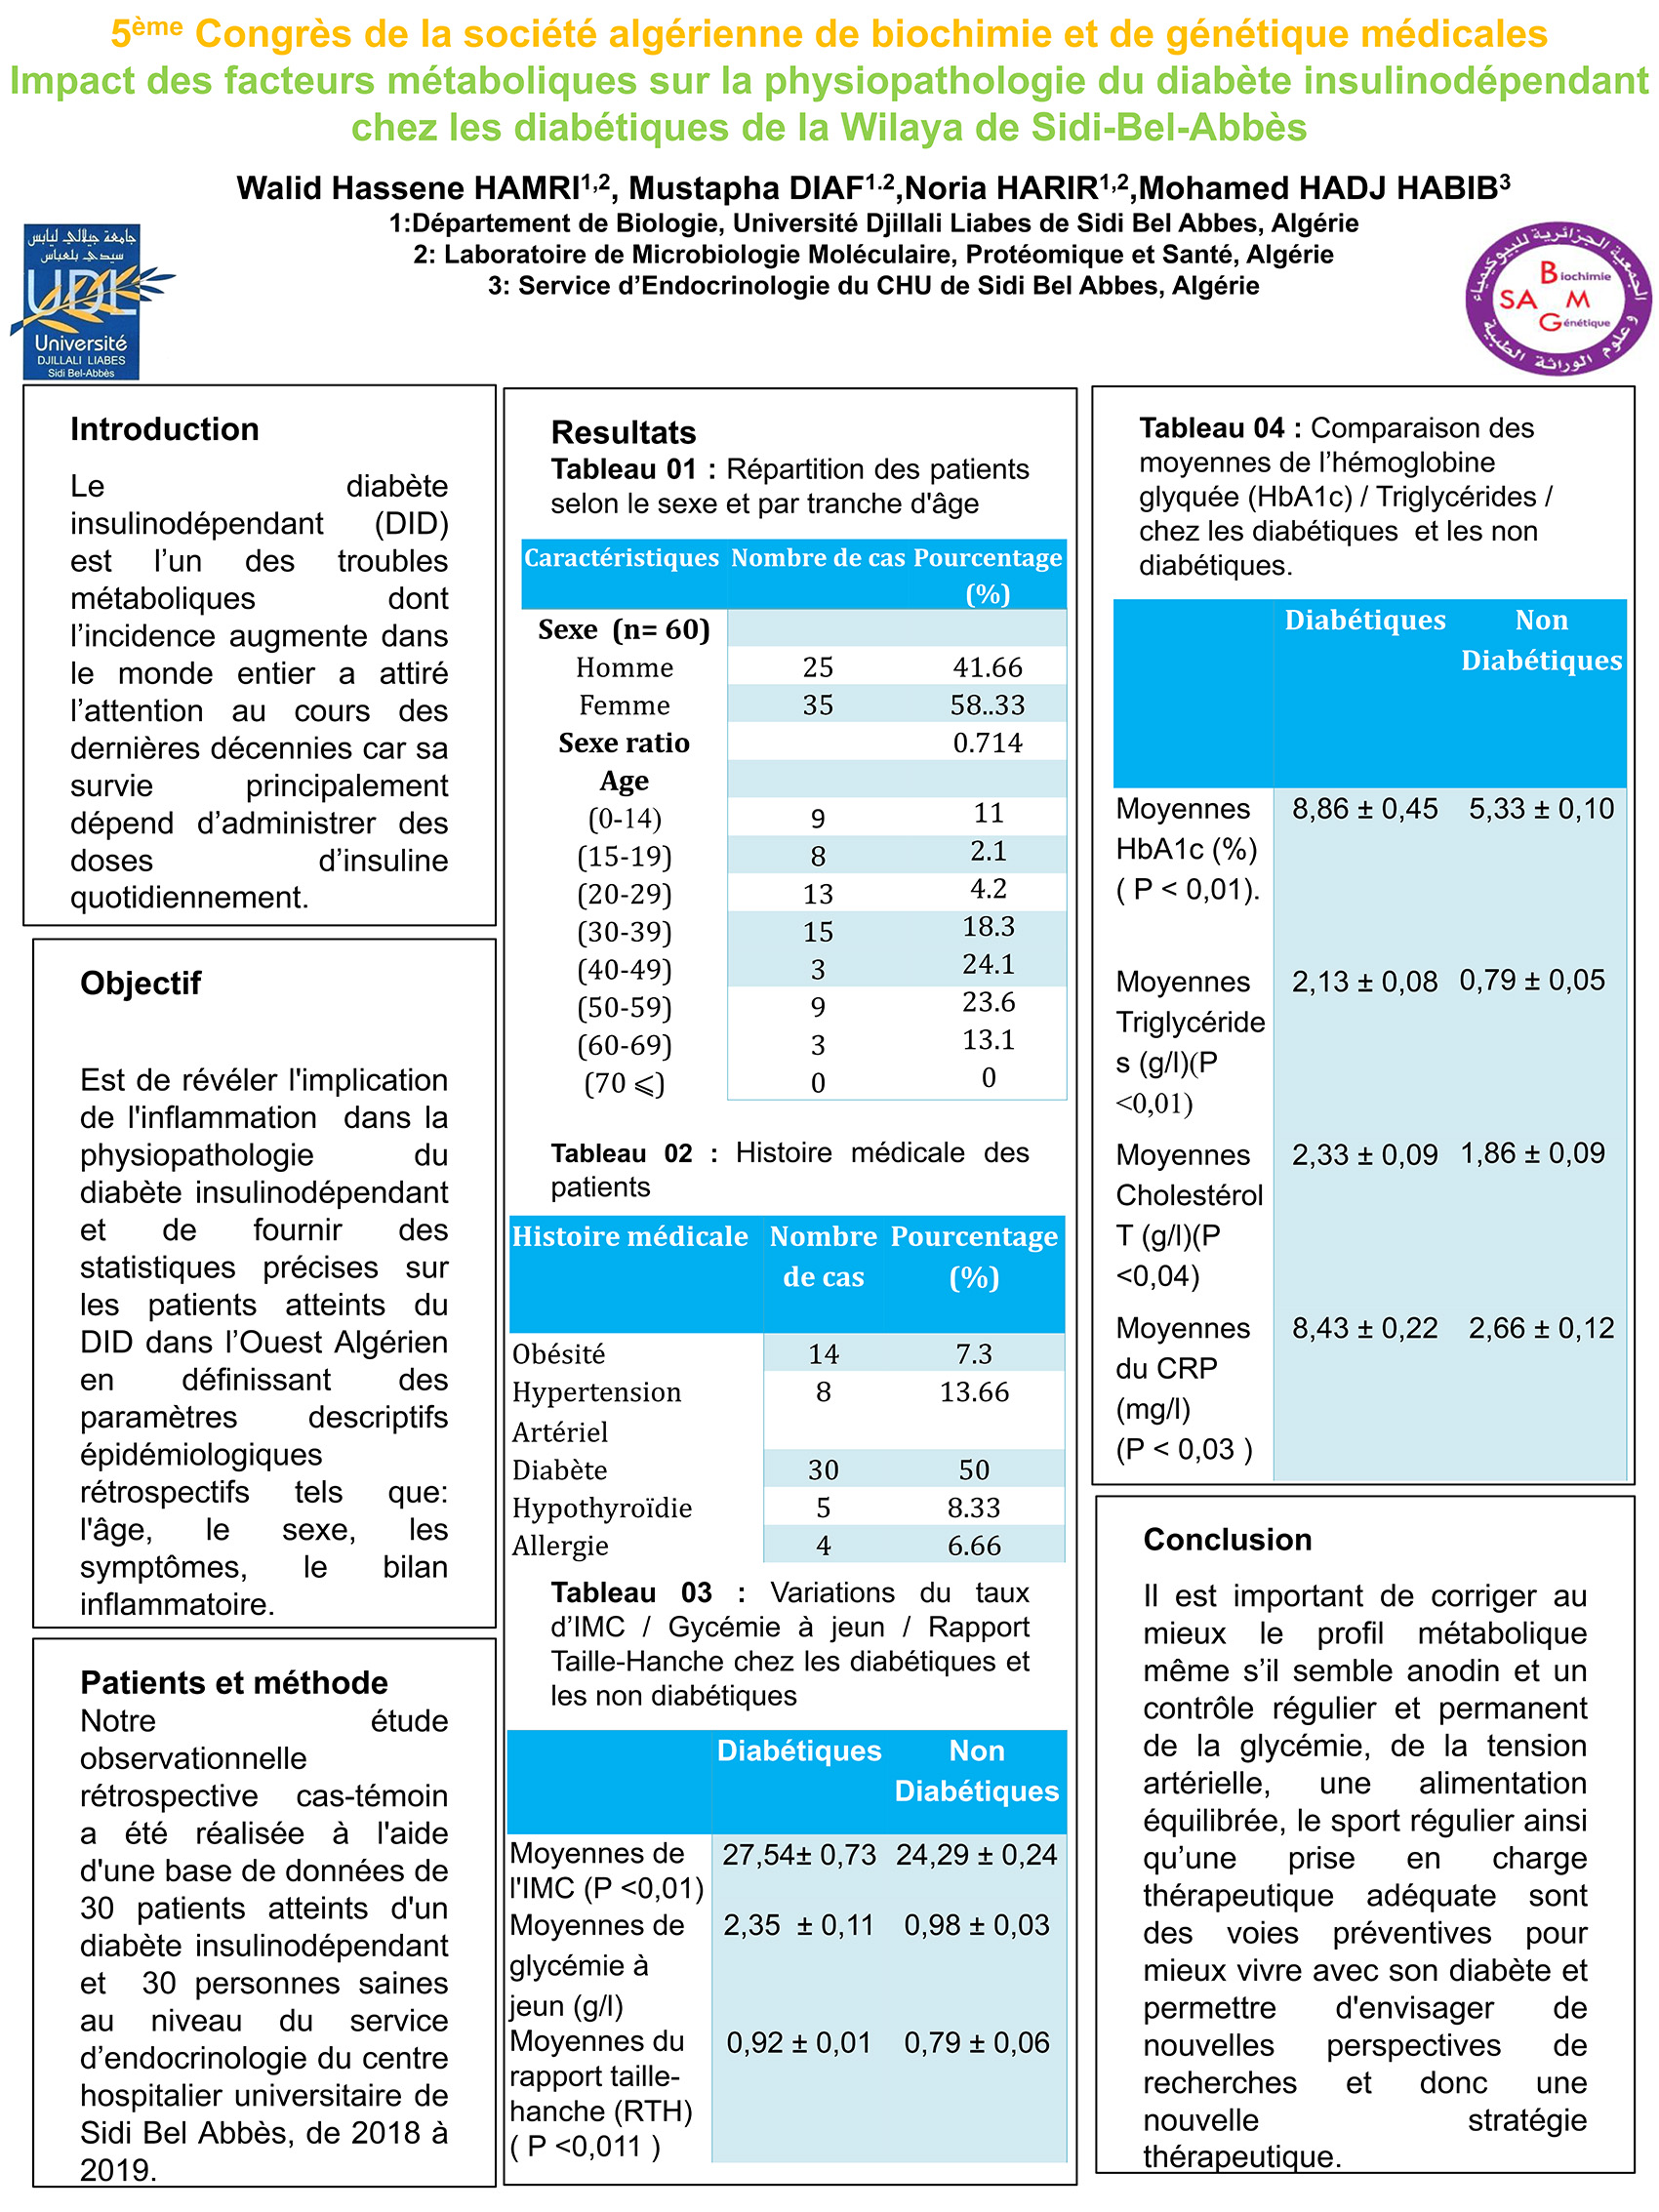 P108 : Impact des facteurs métaboliques sur la physiopathologie du diabète insulinodépendant chez les diabétiques de la Wilaya de Sidi-Bel-Abbès